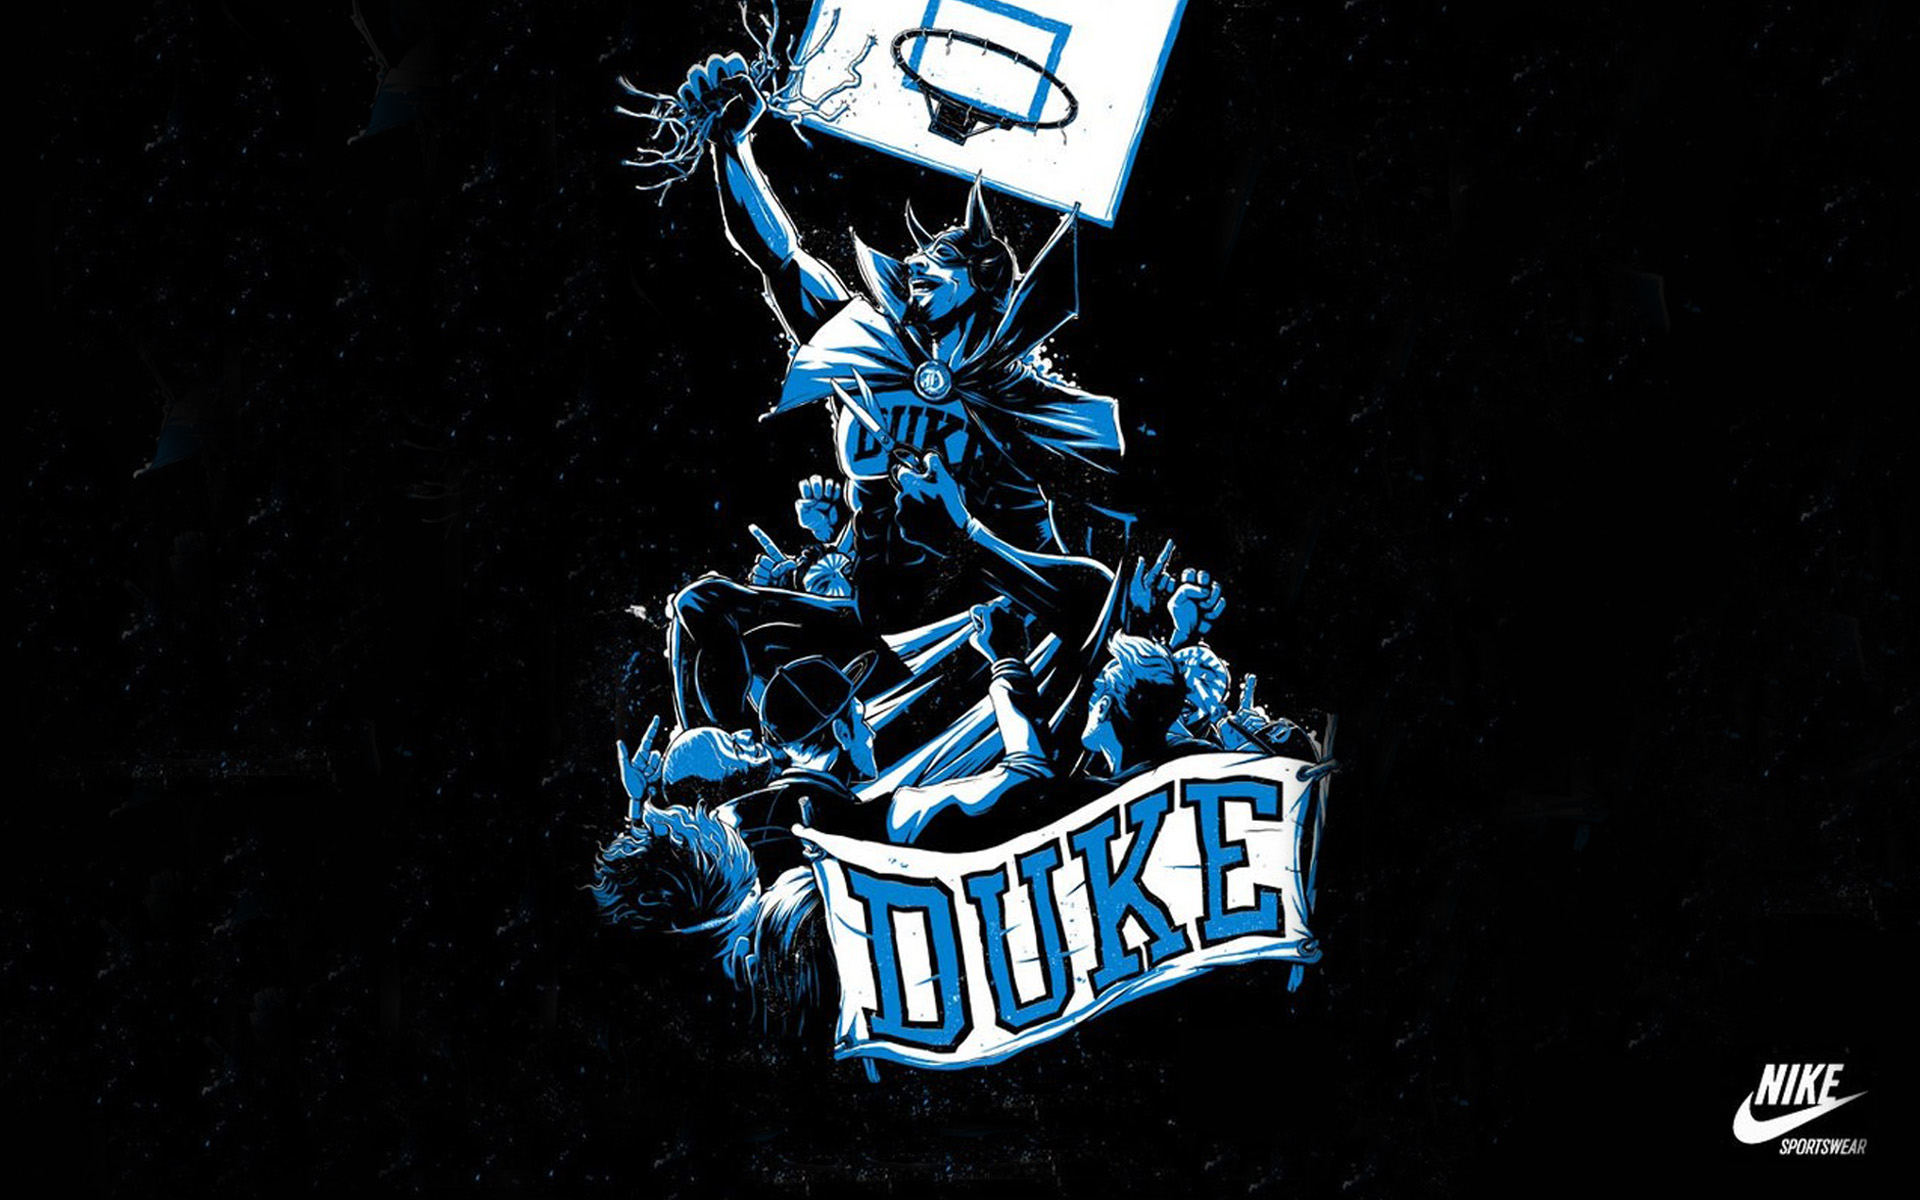 Duke HD Wallpaper